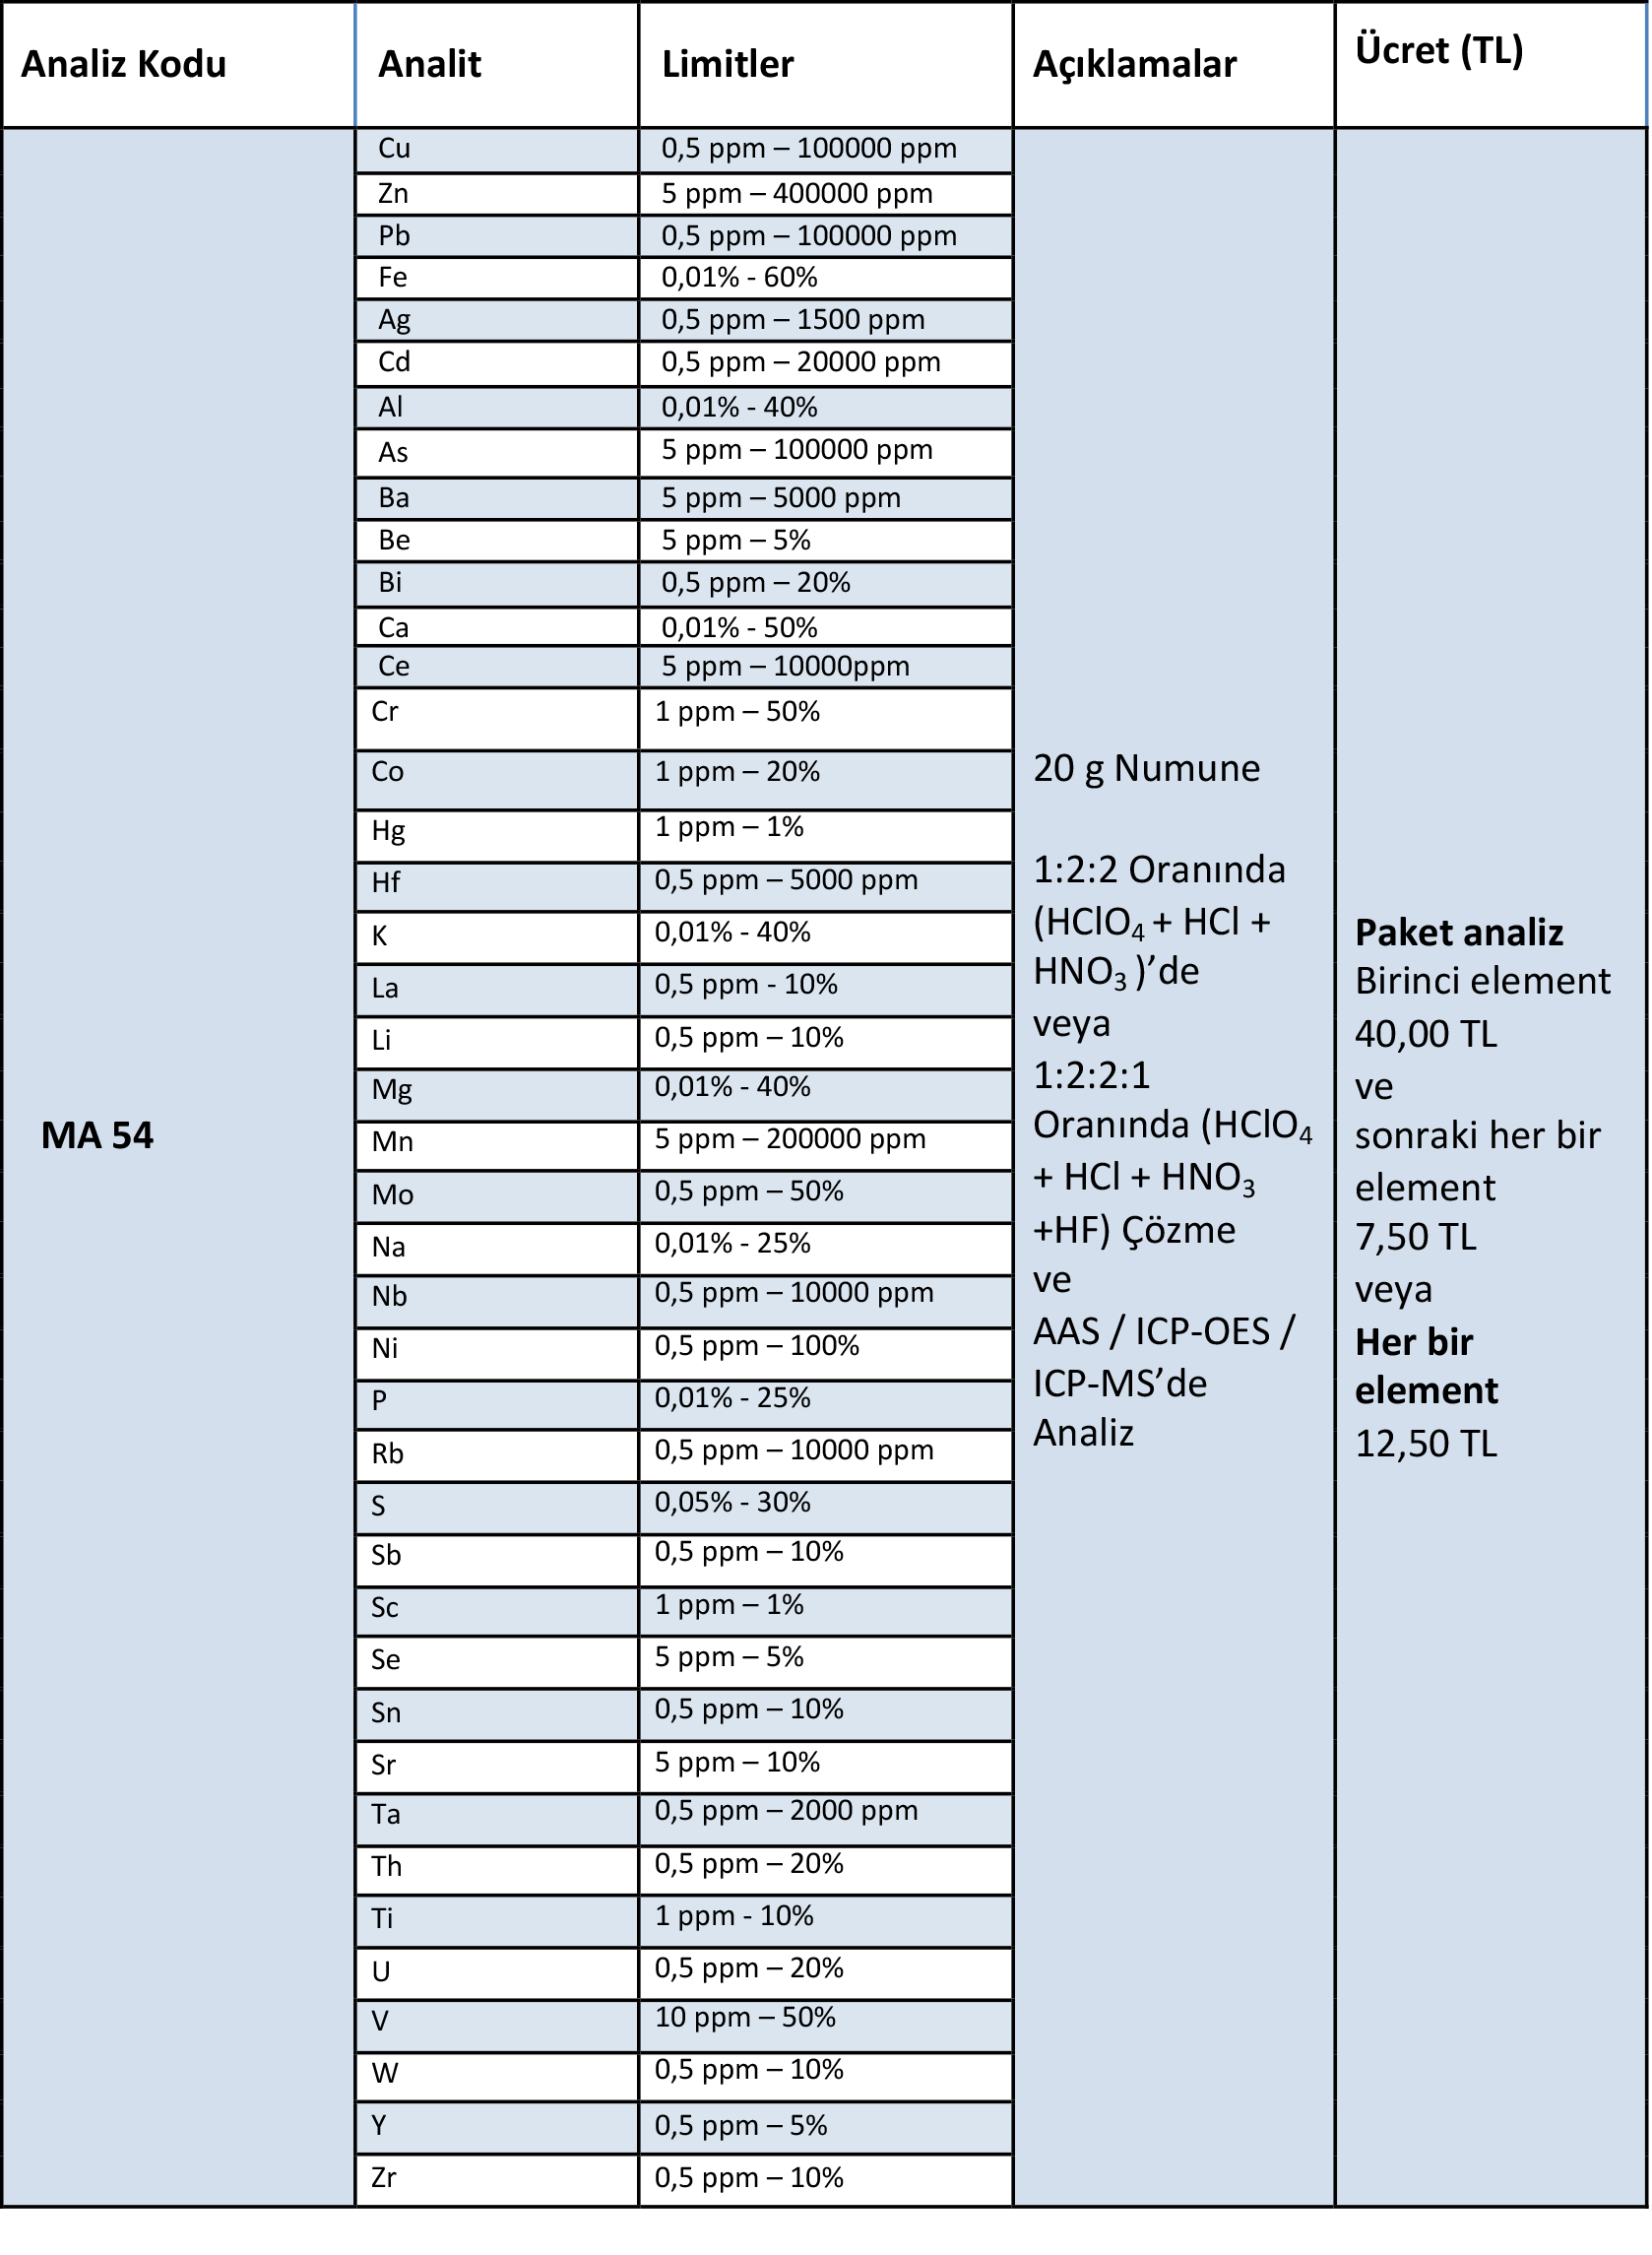 MA 53- Çoklu Asitte Çözme, AAS / ICP OES de Analiz; paket analizdir, toplamda 23 adet element analizini içermektedir. Sülfürlü ve silikat cevherleri için uygulanır.